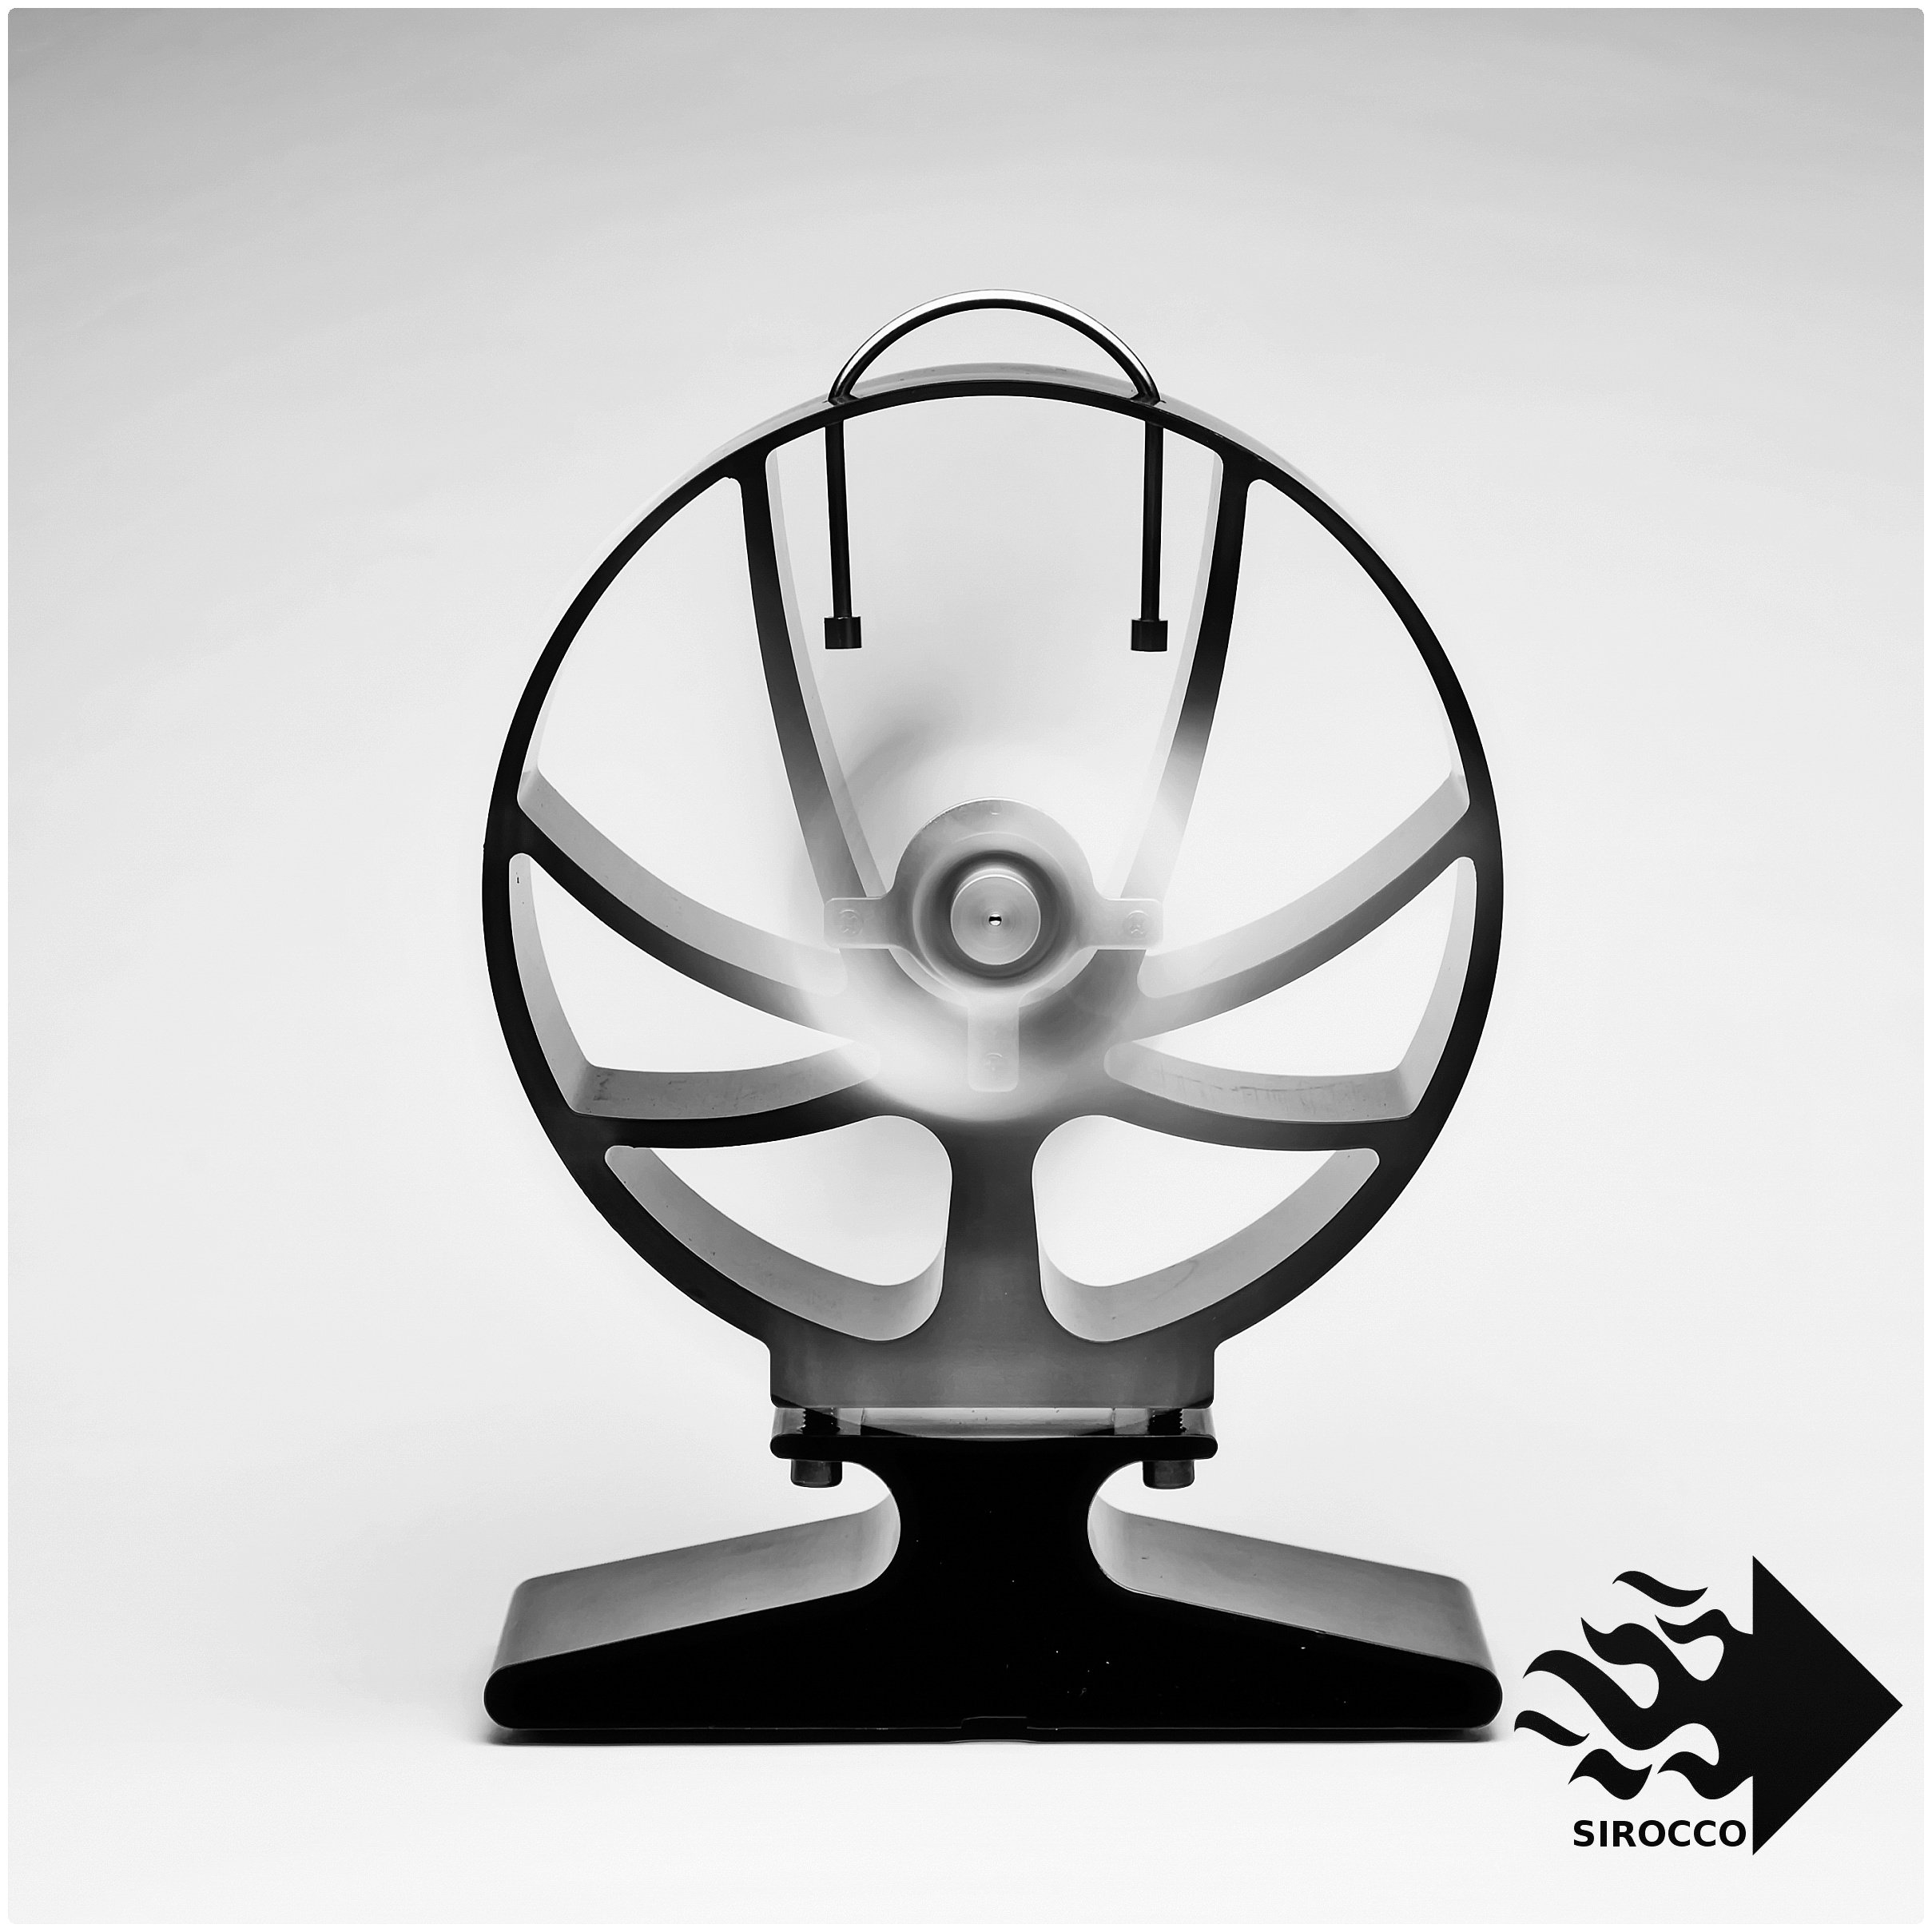 Židinio ventiliatorius SIROCCO PLUS kaina | pigu.lt